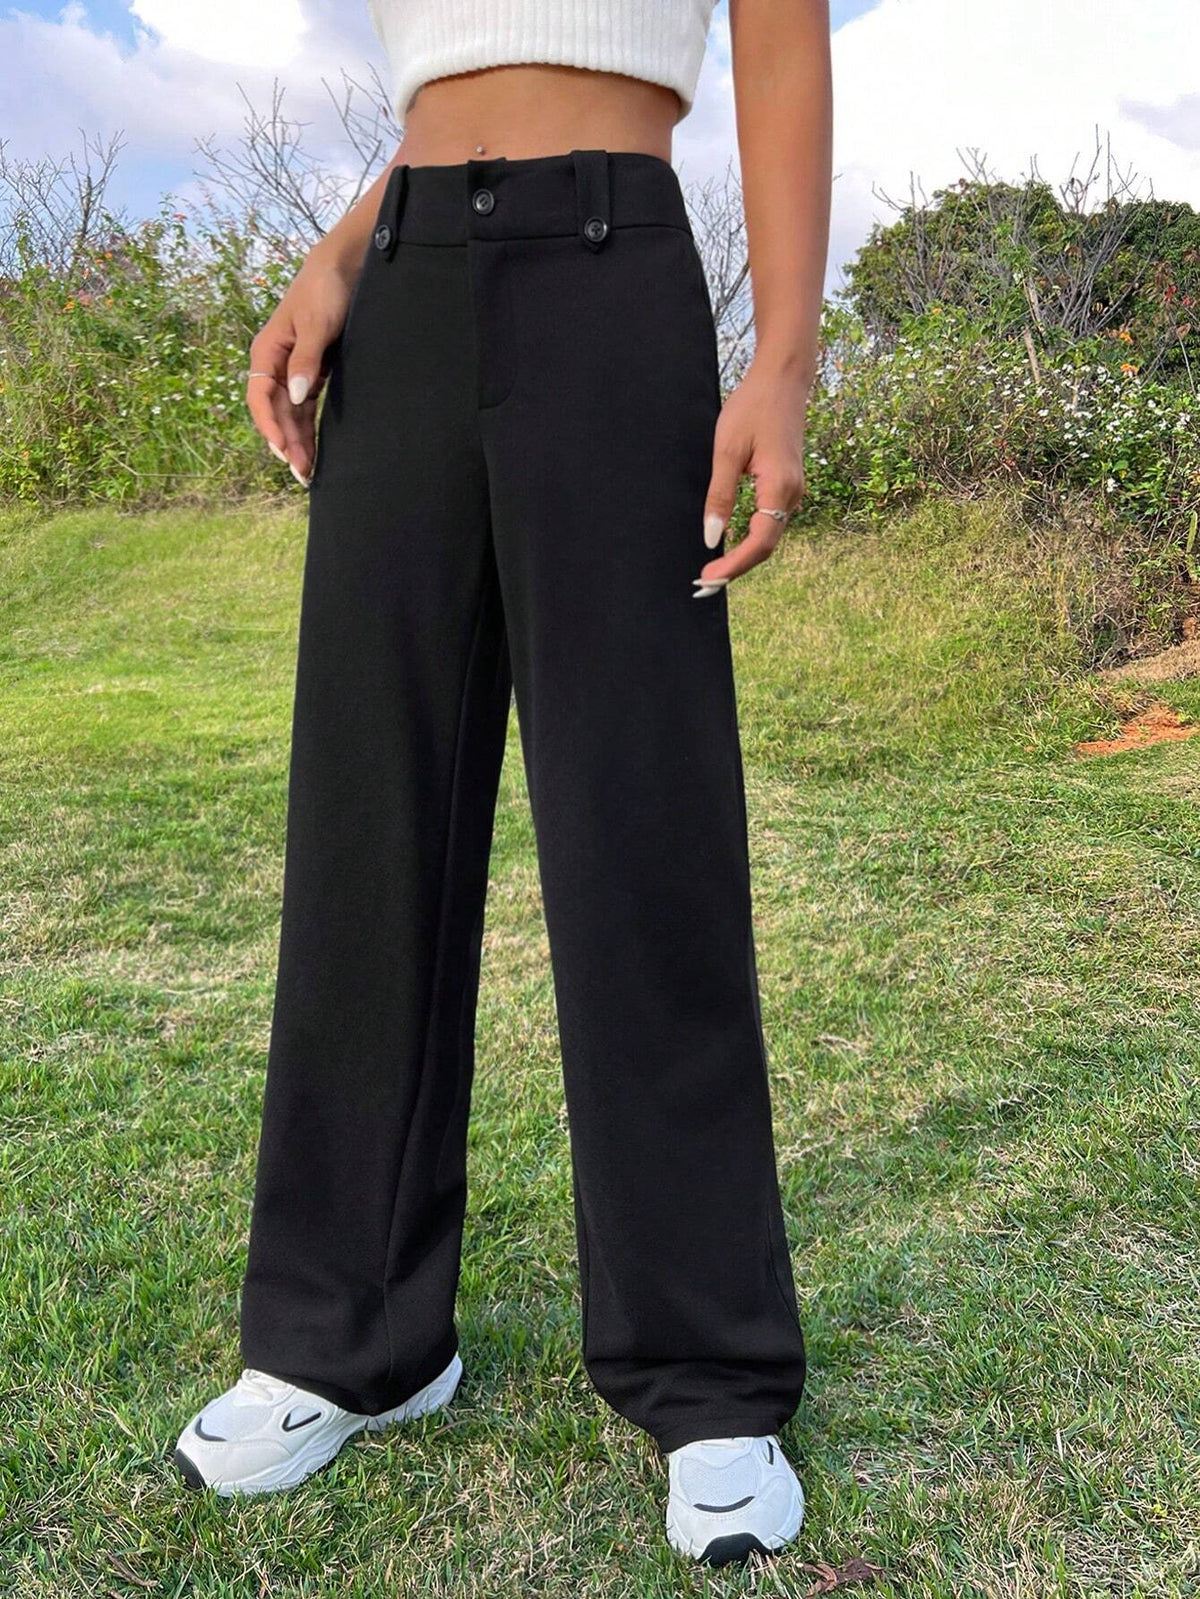 EZwear Black Woven Women's Trousers